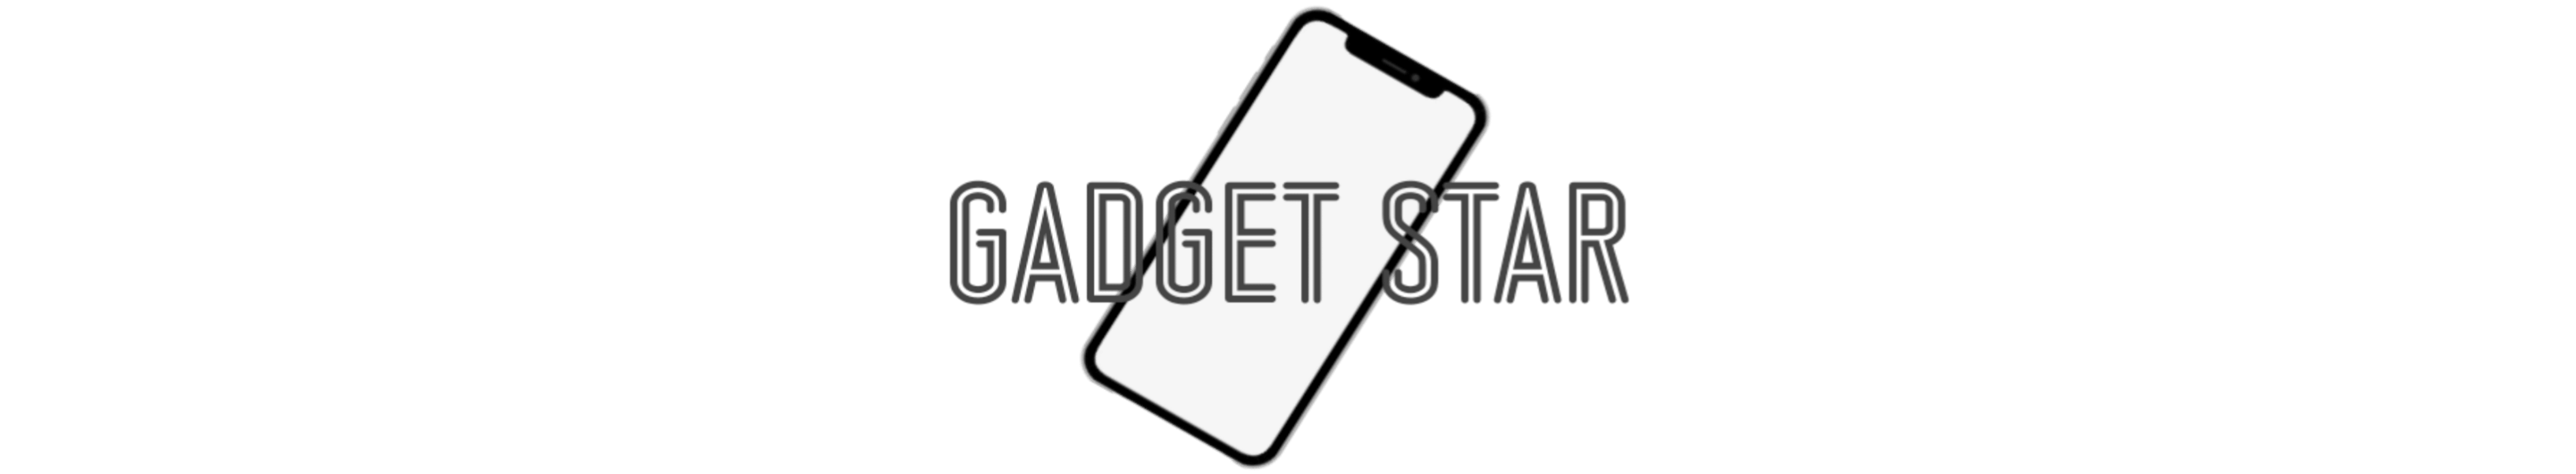 Gadget Star